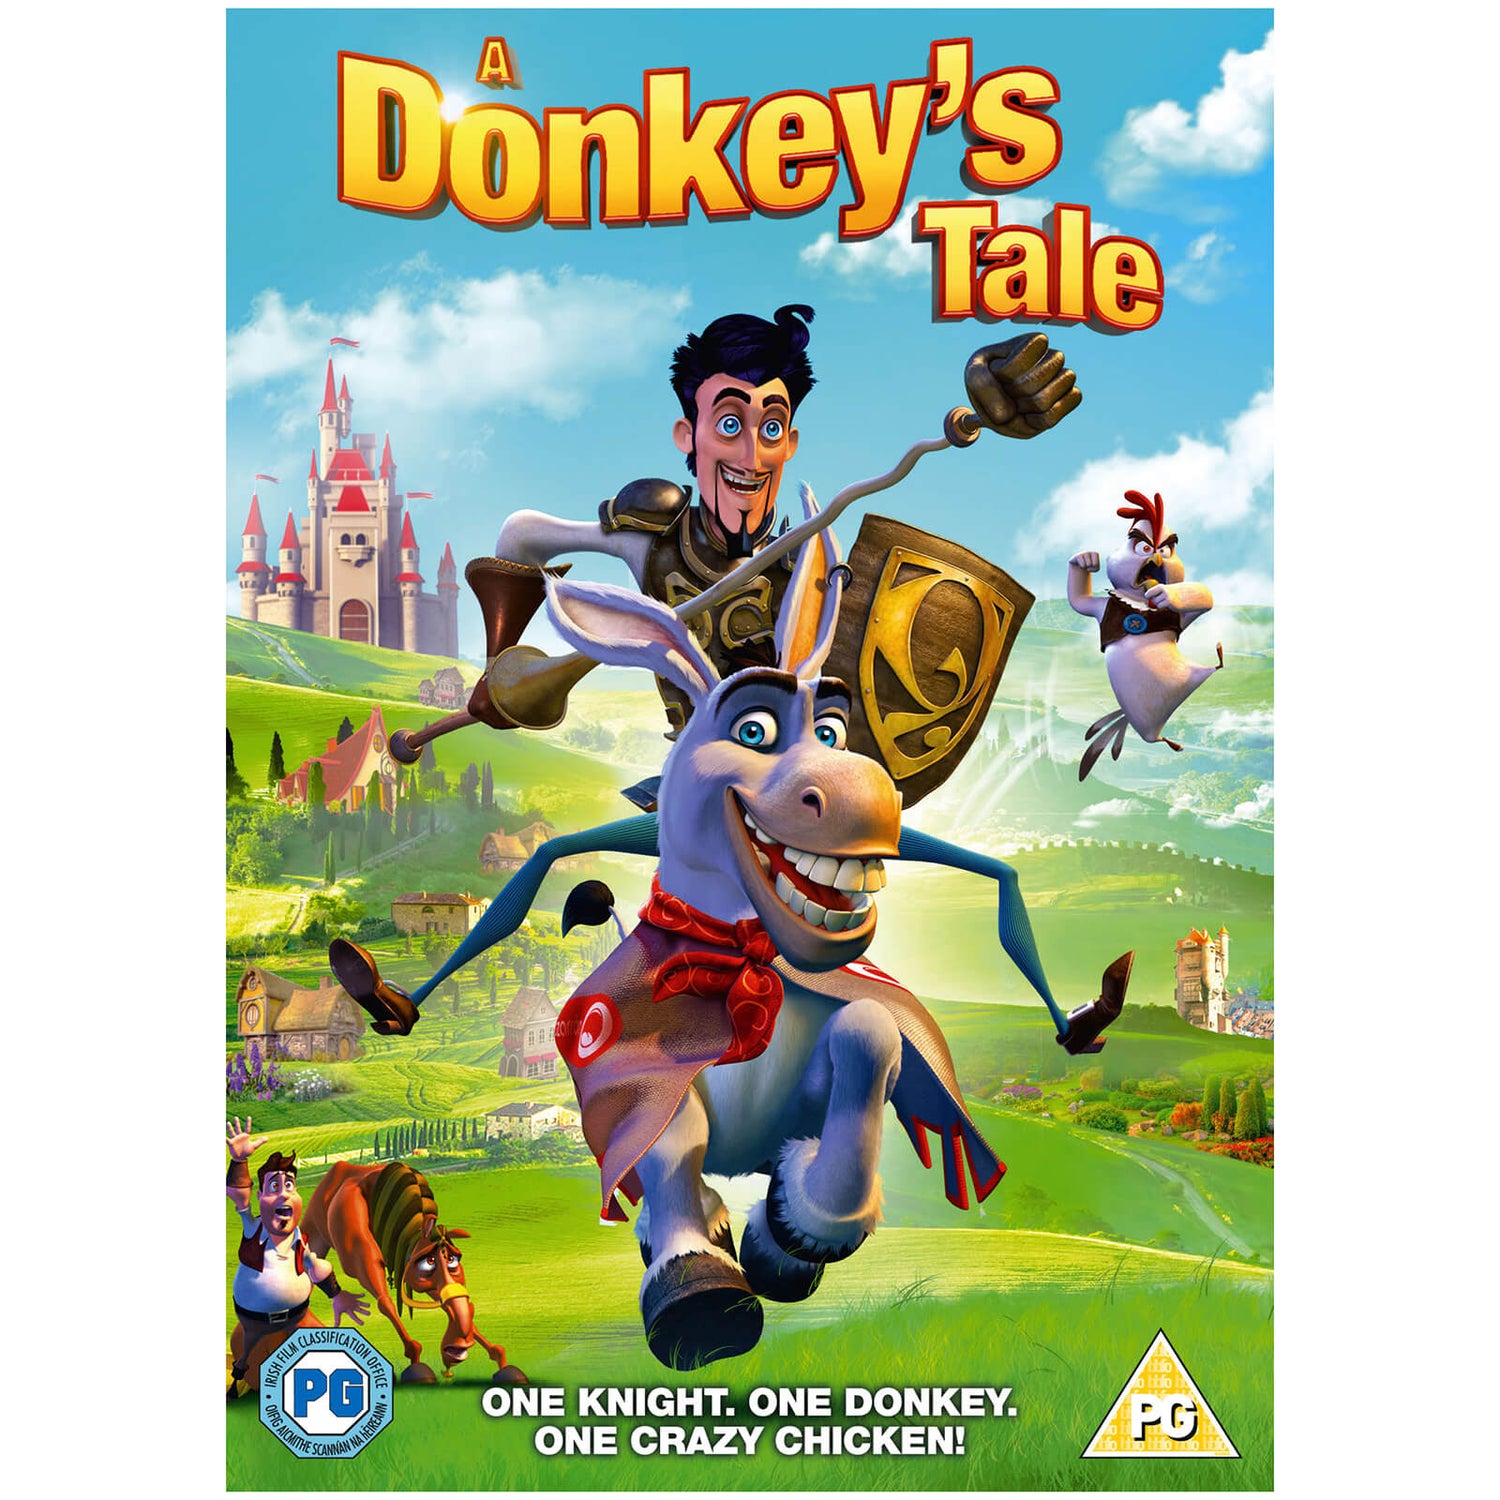 A Donkeys Tale